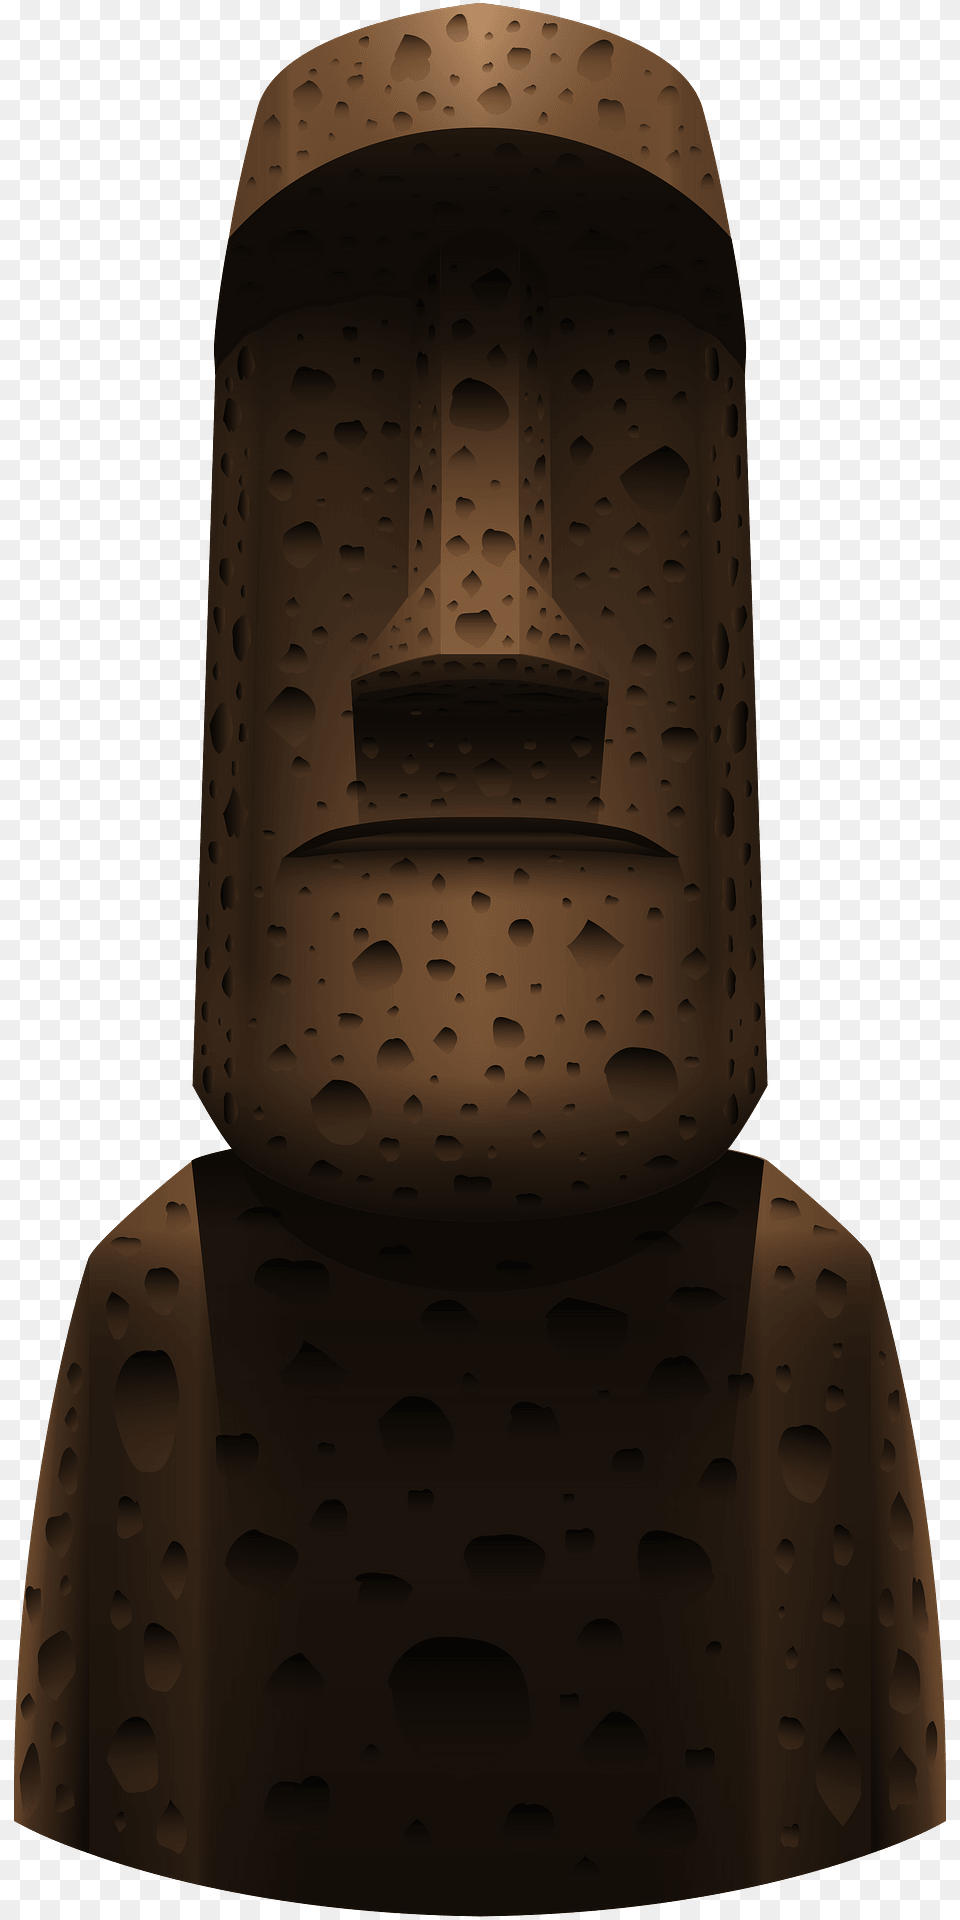 Moai Statue Clipart, Emblem, Symbol, Architecture, Pillar Png